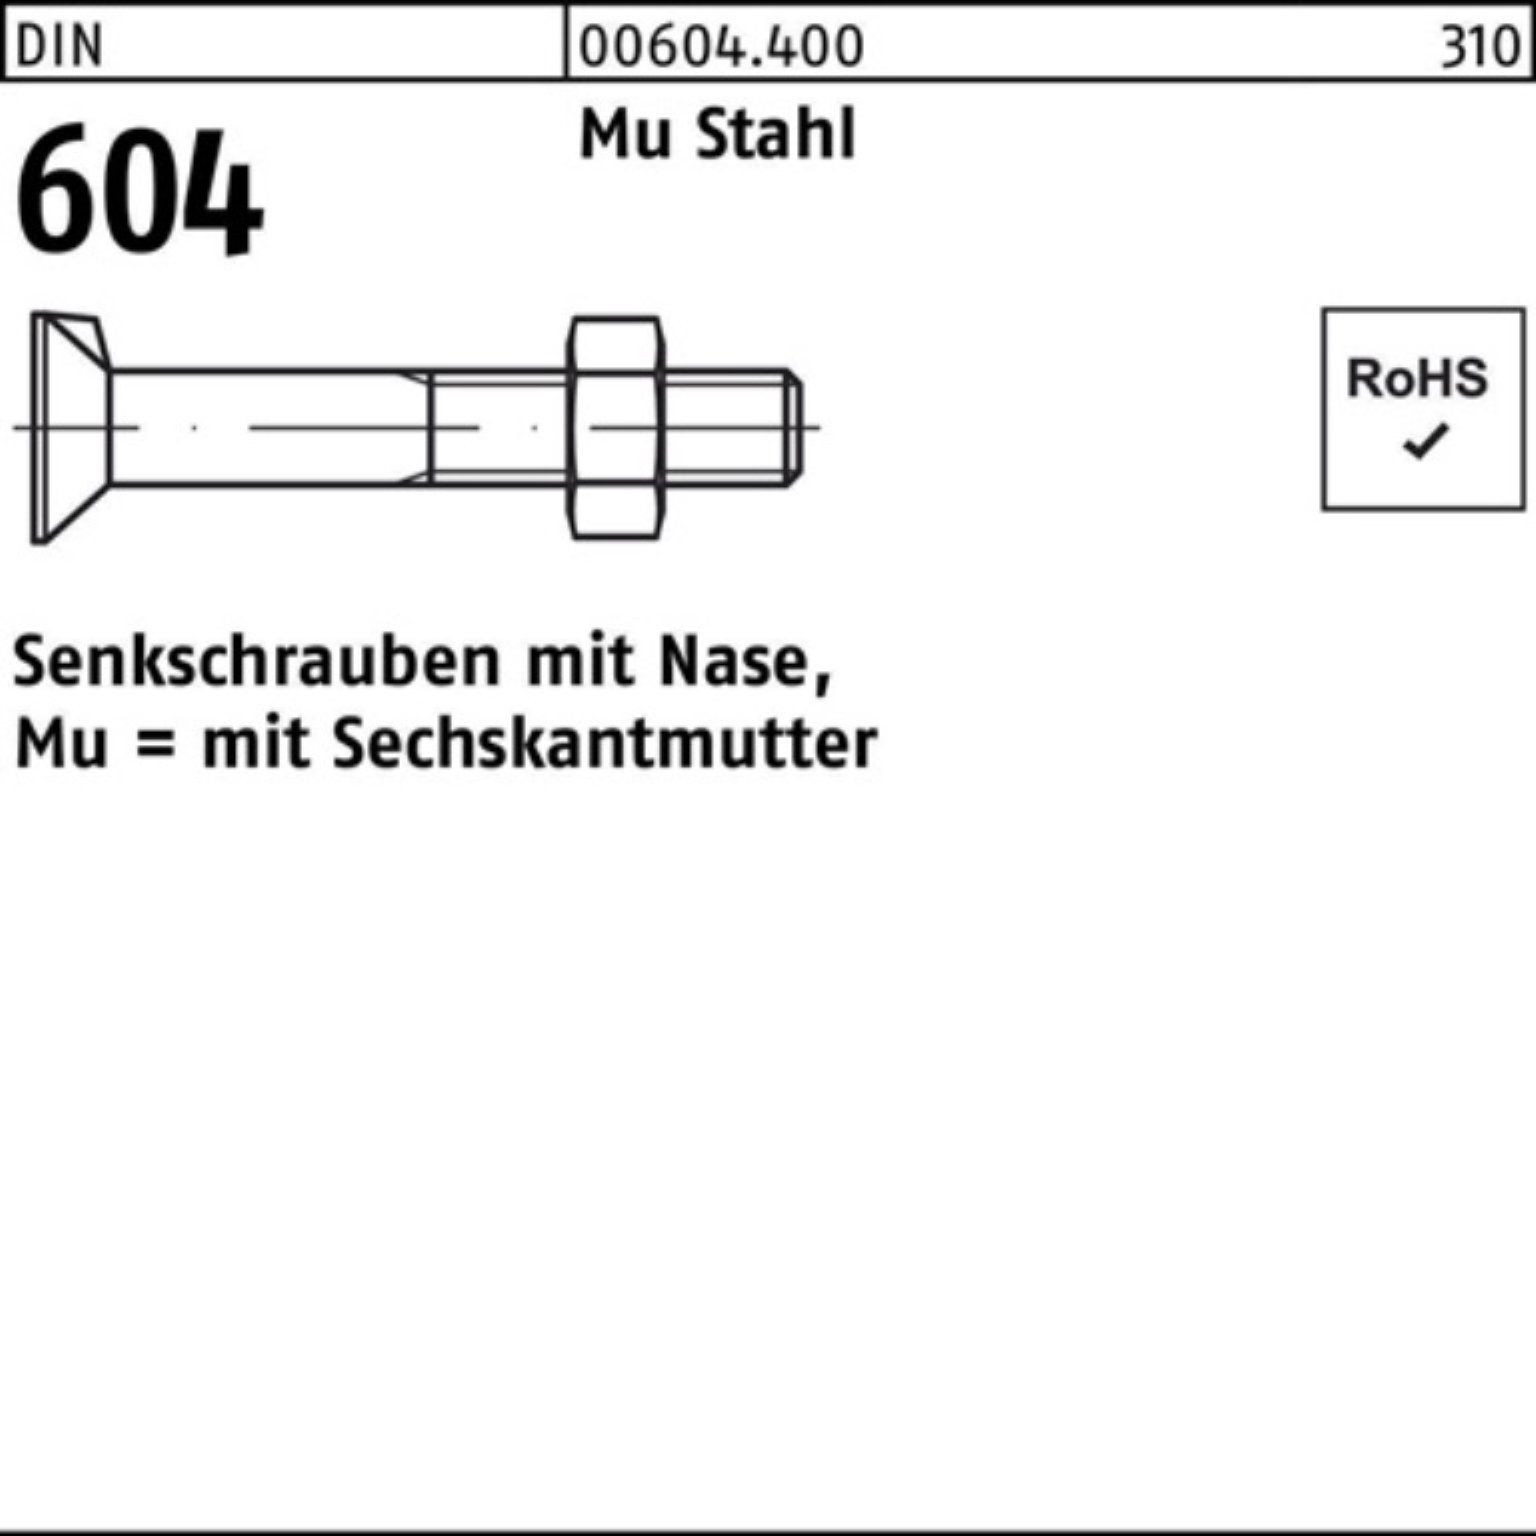 Reyher Senkschraube 100er Pack Senkschraube DIN 604 M12x Stahl 110 4.6 Nase/6-ktmutter Mu